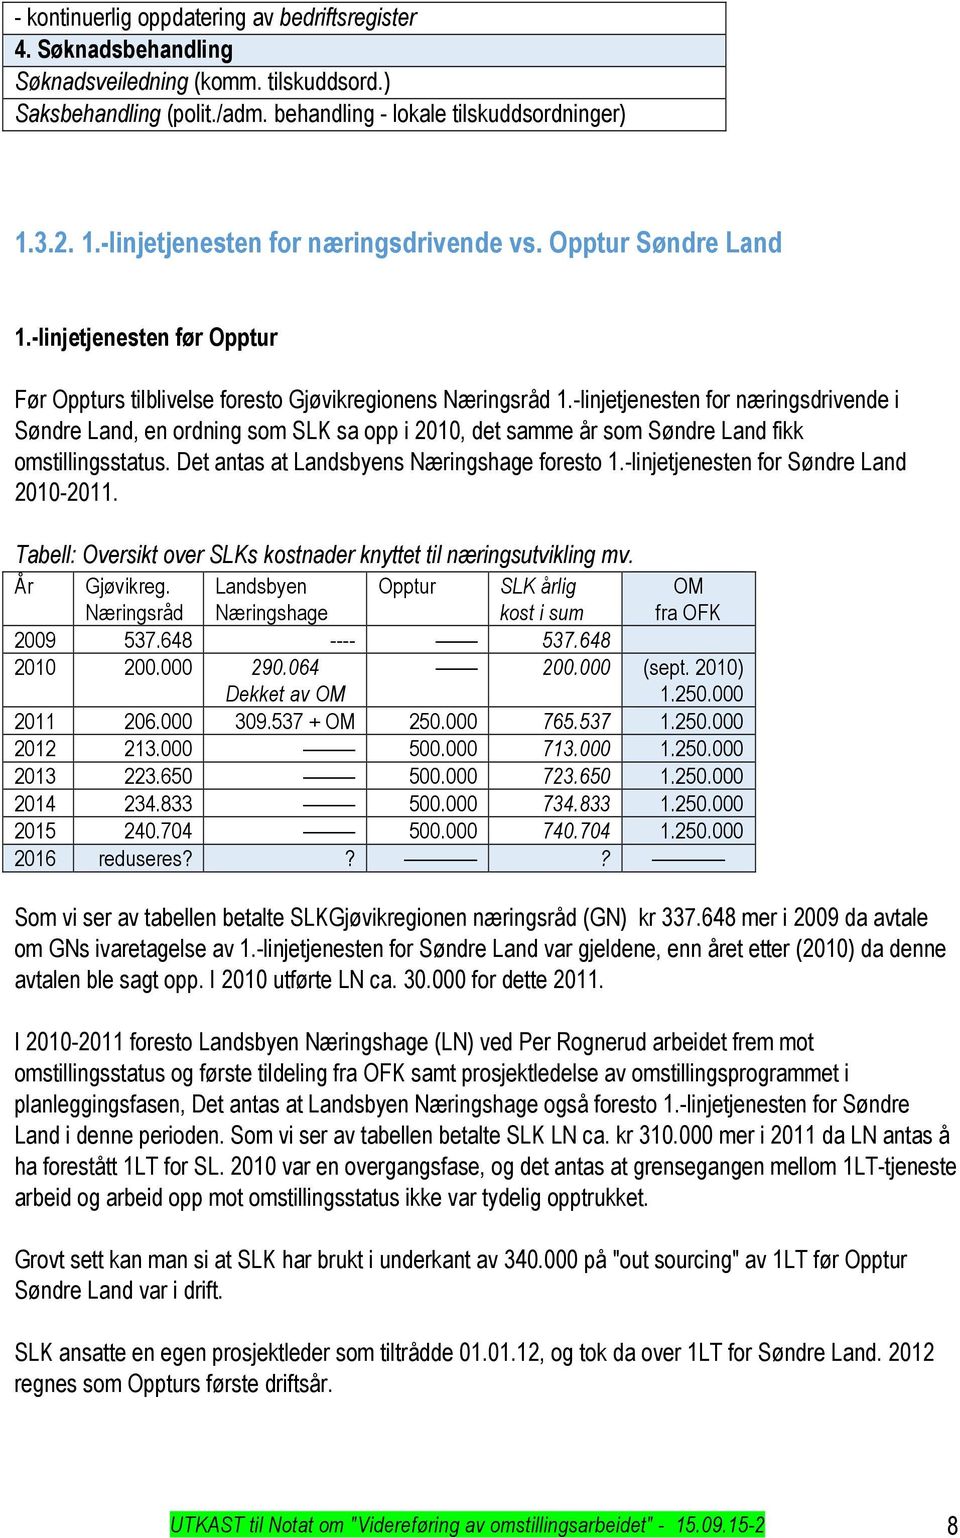 -linjetjenesten for næringsdrivende i Søndre Land, en ordning som SLK sa opp i 2010, det samme år som Søndre Land fikk omstillingsstatus. Det antas at Landsbyens Næringshage foresto 1.